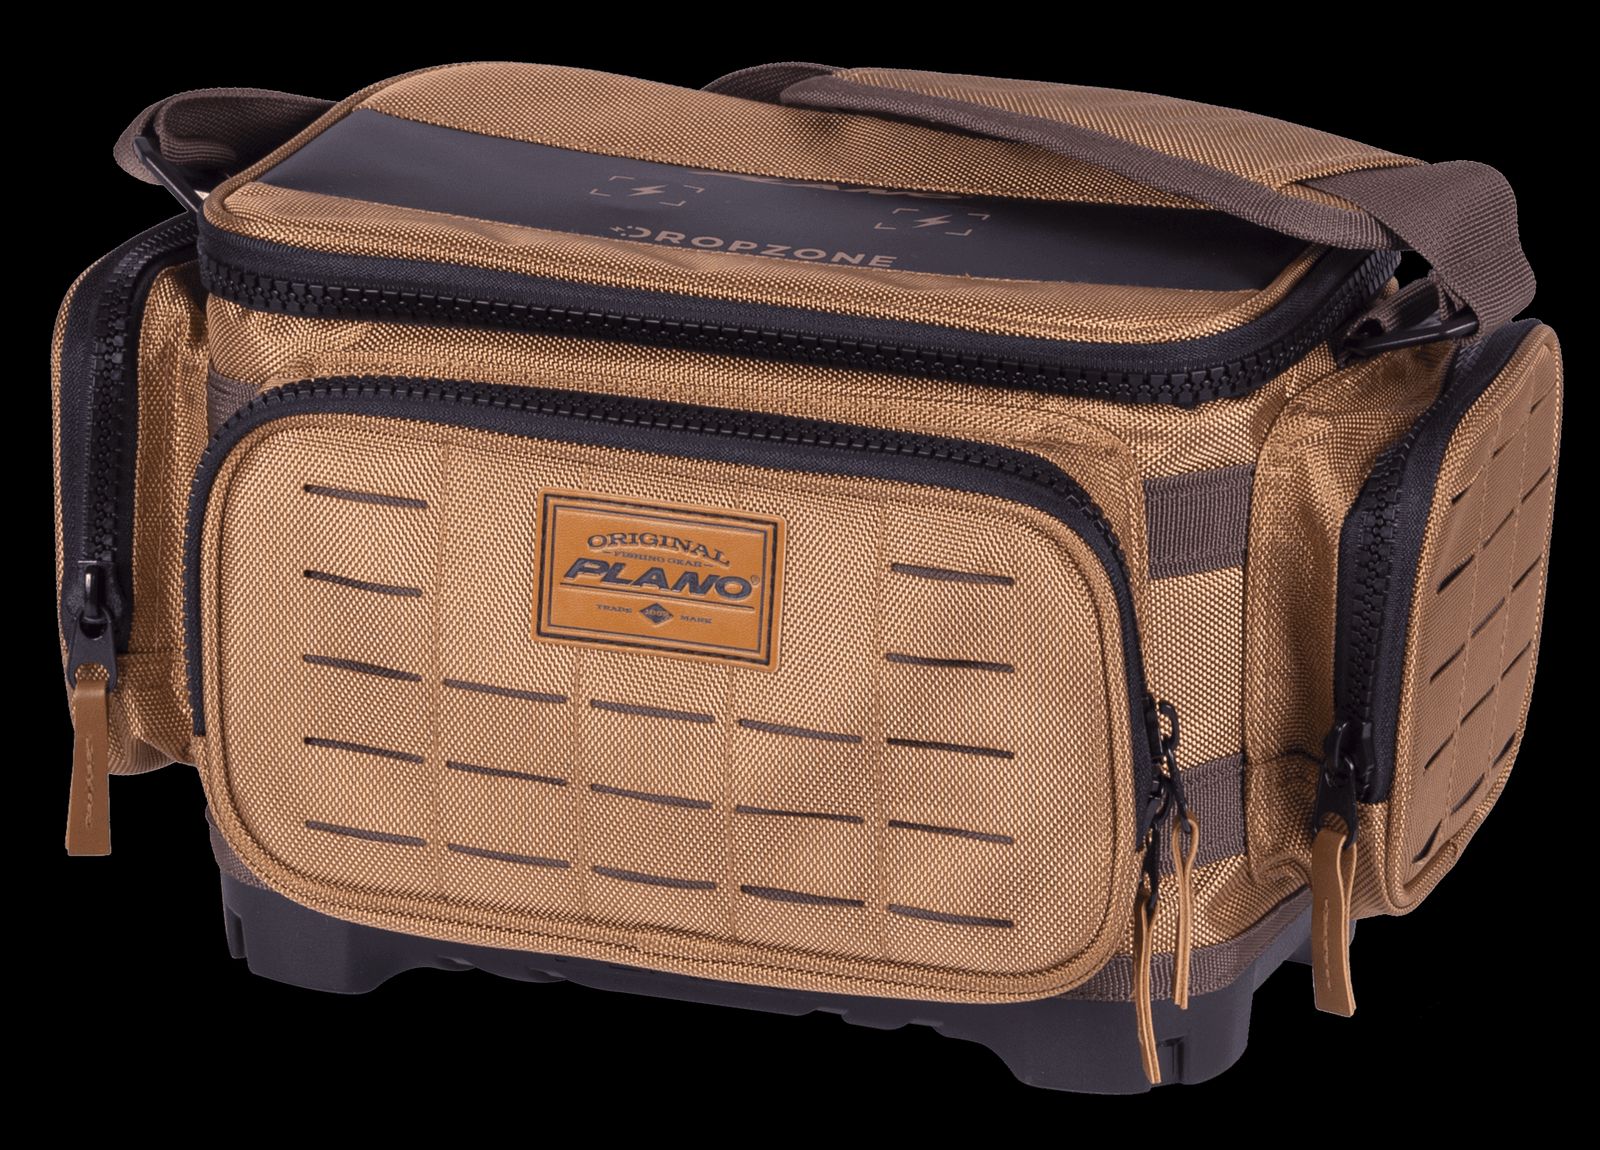 送料無料 Plano ガイドシリーズ 3500 タックルバッグ 収納ボックス5個付き 楽天海外通販 Plano Guide Series 3500 Tackle Bag, Includes 5 StowAway Boxes